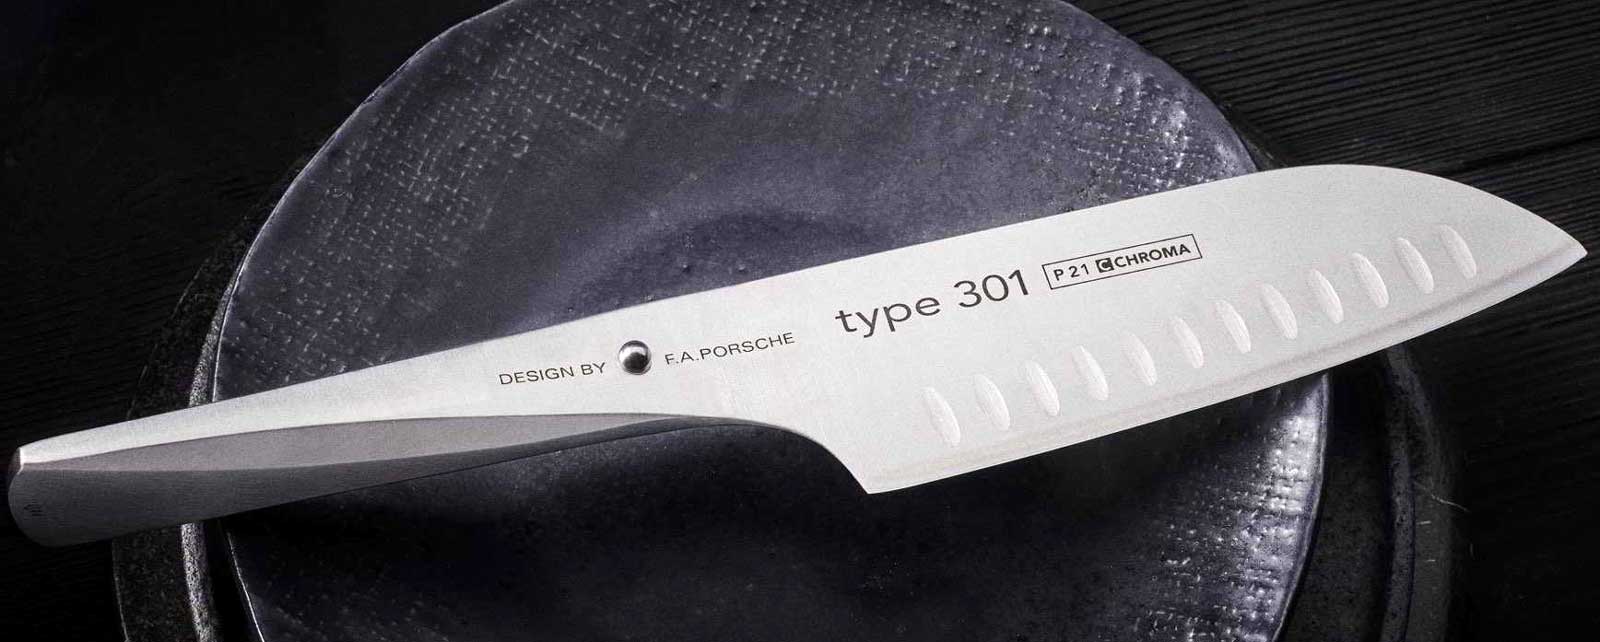 CHROMA type 301 - Design af FA Porsche - kokkekniv Disse innovative knive Type 301, designet af designfirmaet FA Porsche, abner et nyt kapitel i udviklingen af koekkenknive.